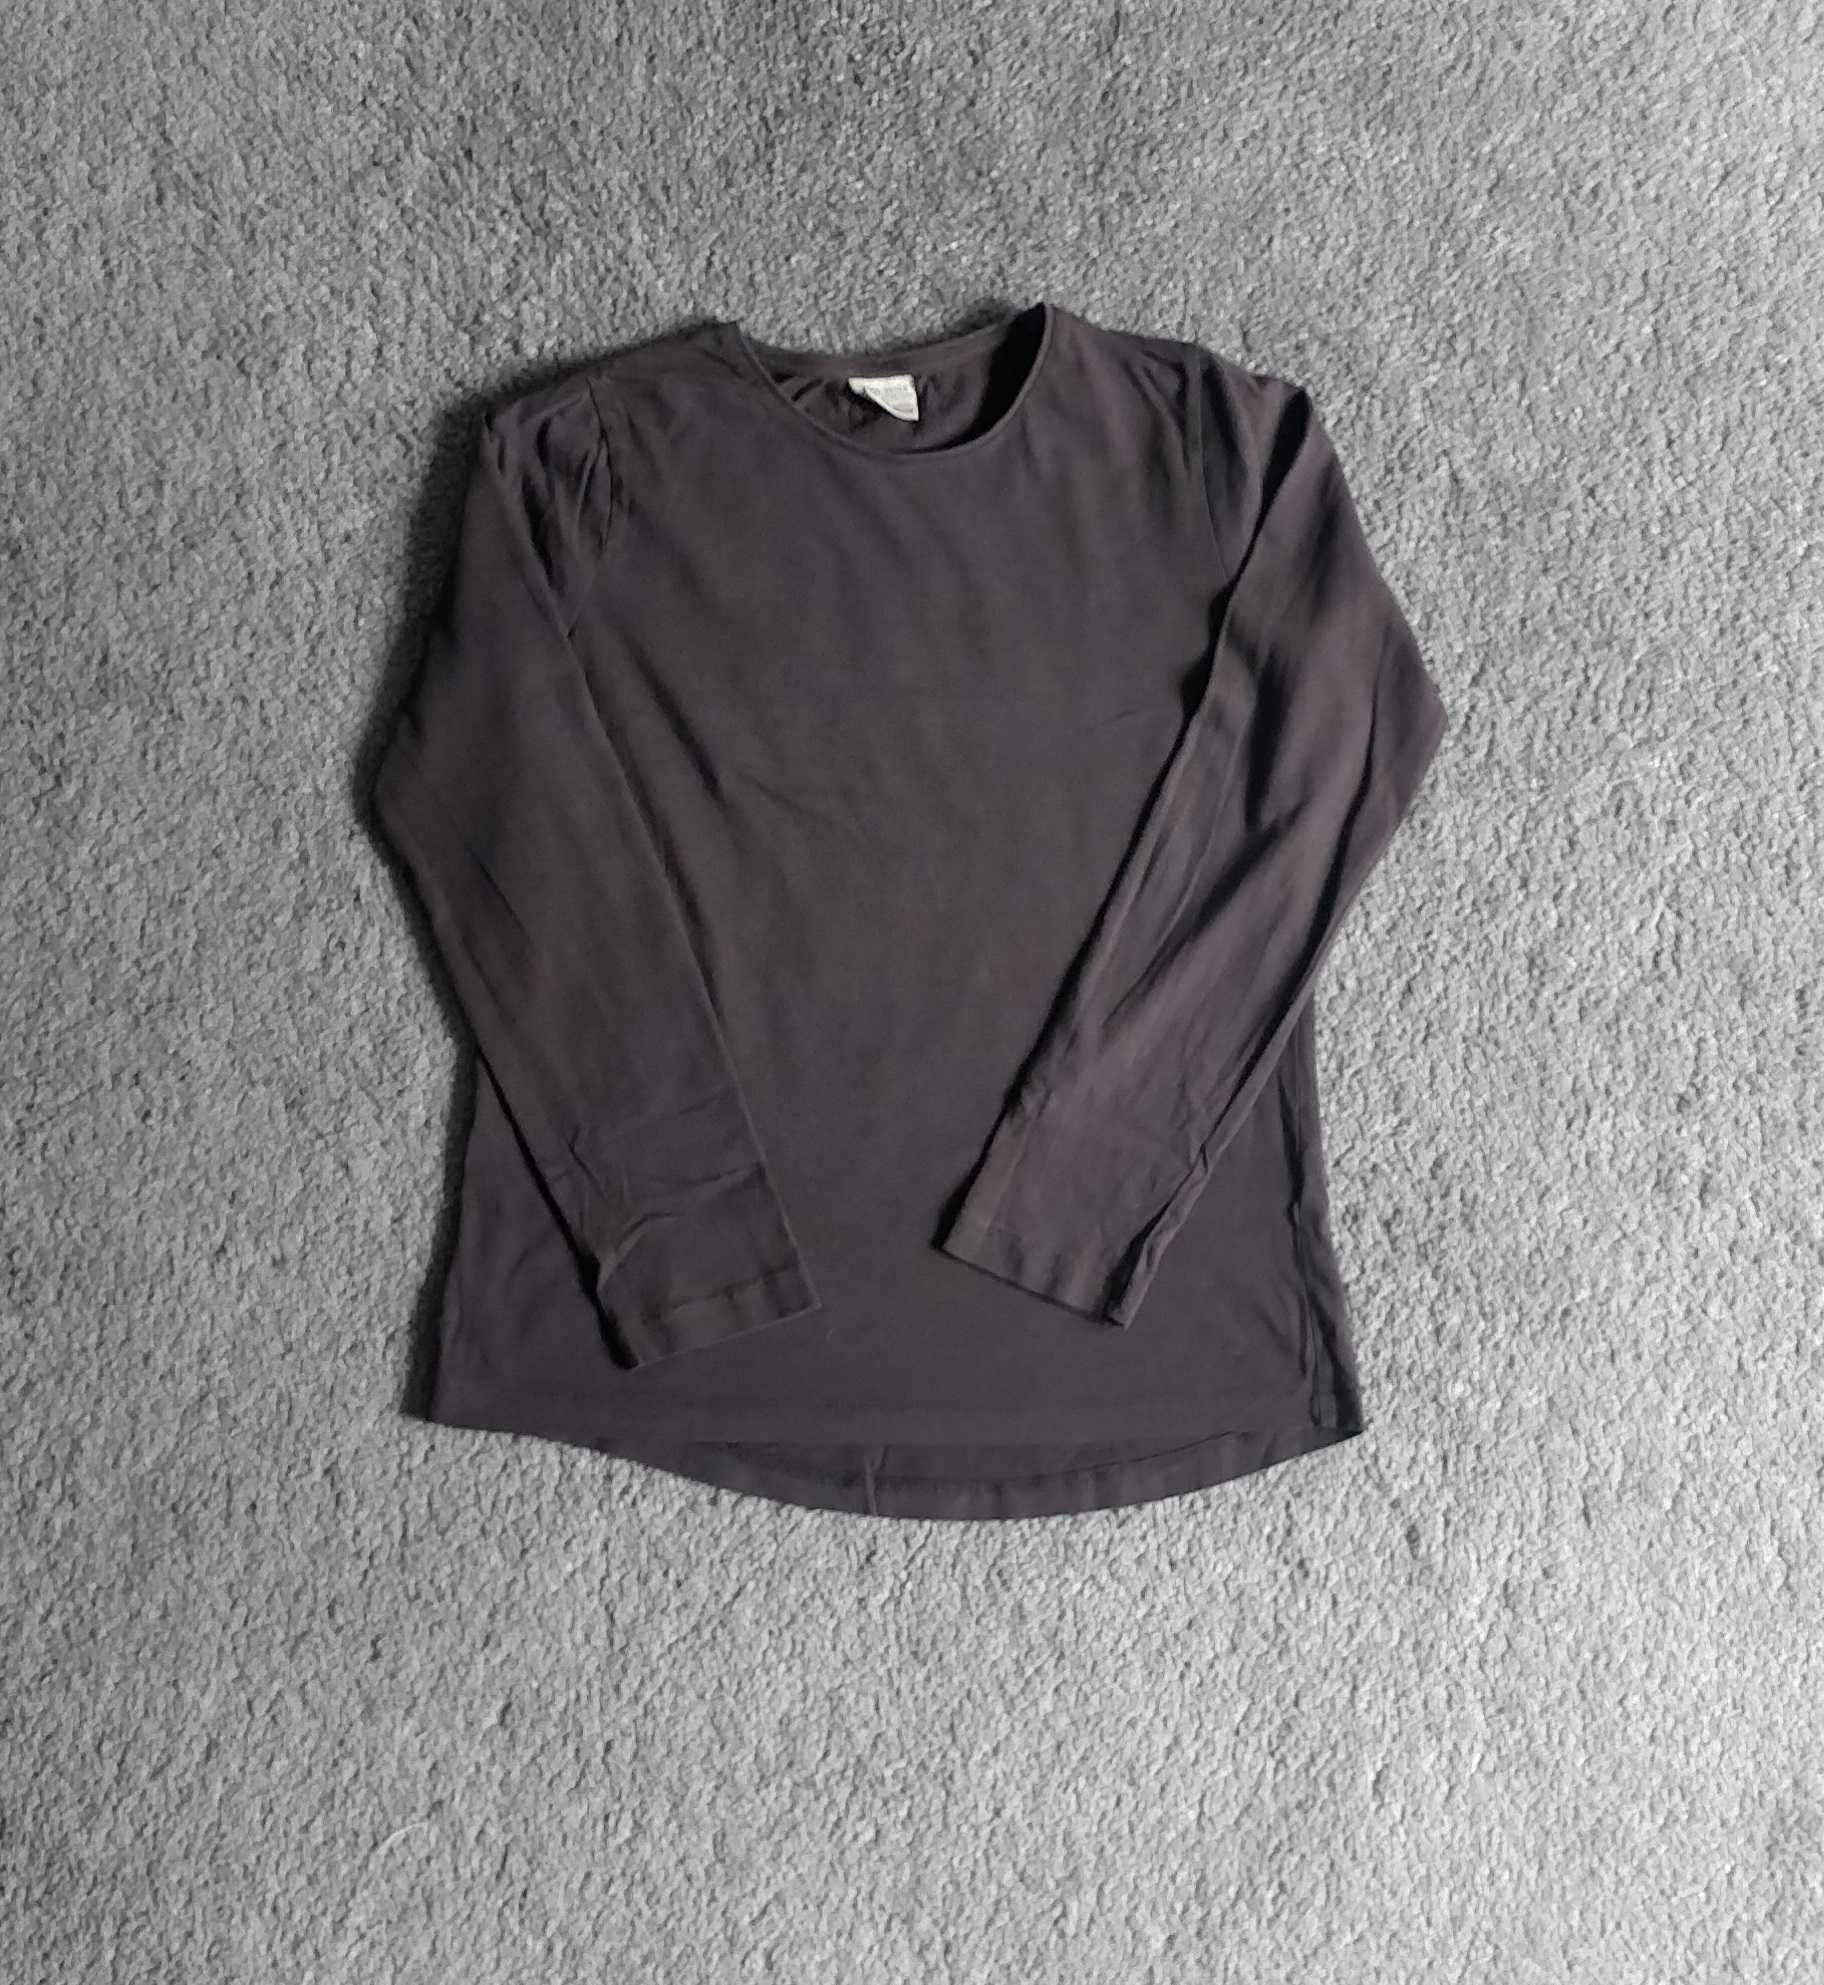 Bluza, bluzka Zara, rozmiar 152, 11 - 12 lat, dziewczęca.